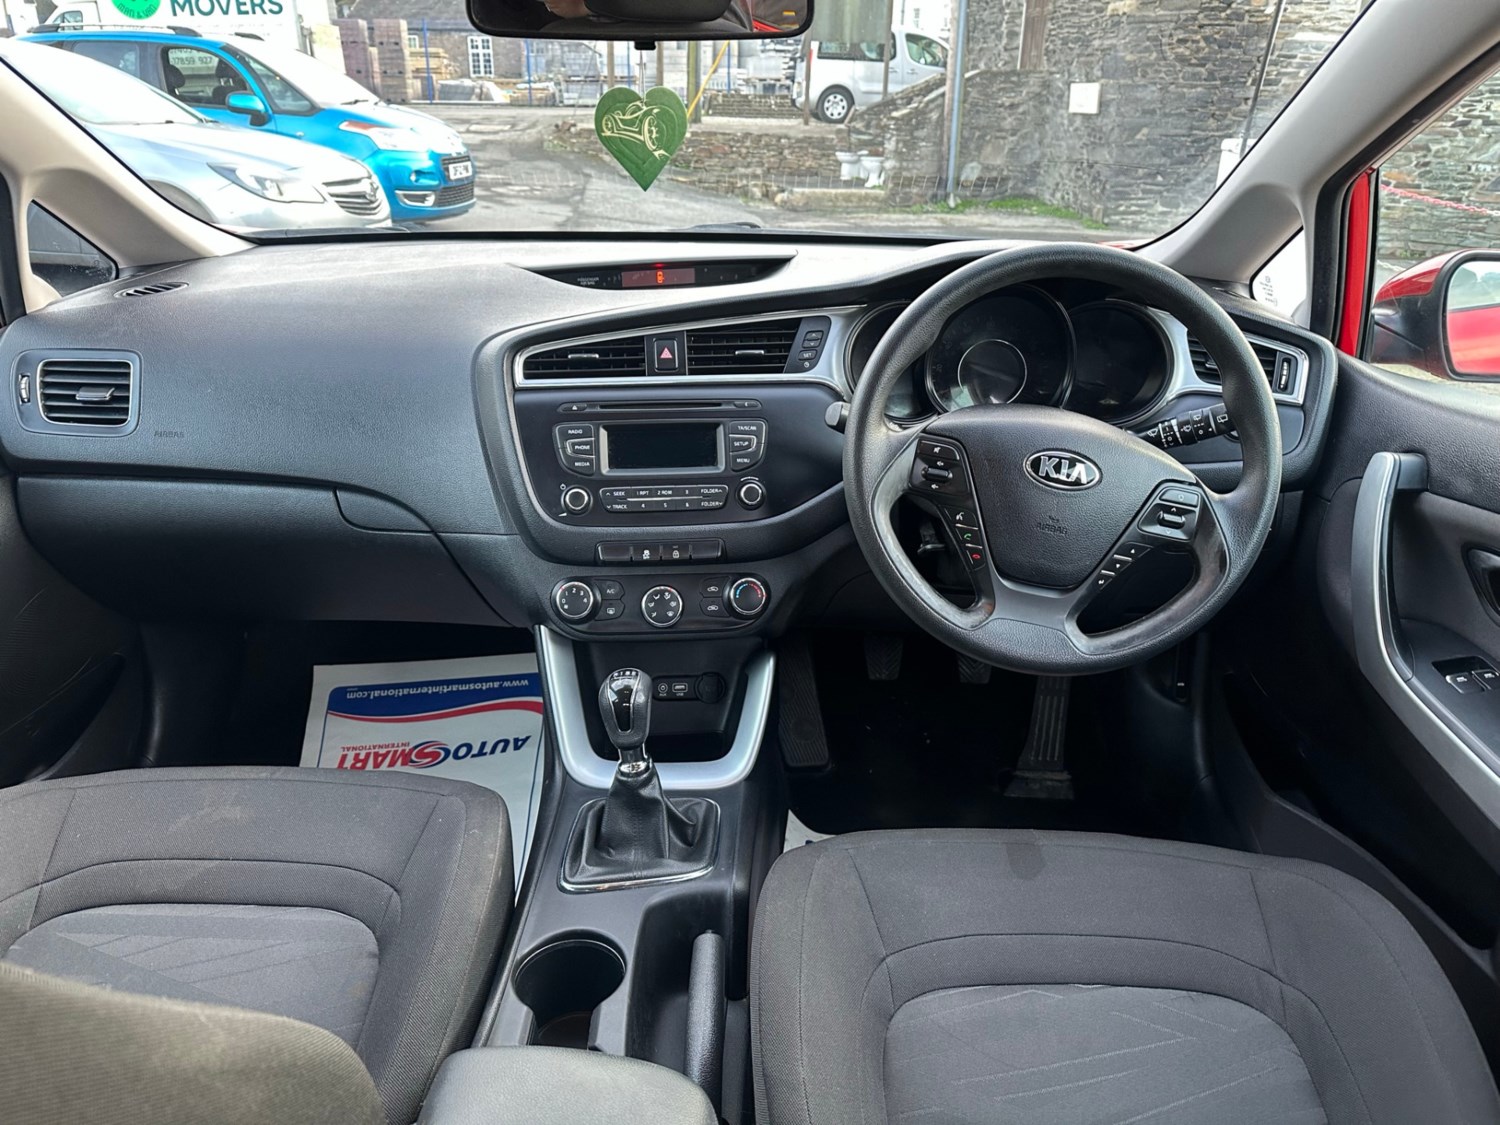 2015 (65) Kia Ceed 1.4 CRDi 5dr For Sale In Launceston, Cornwall